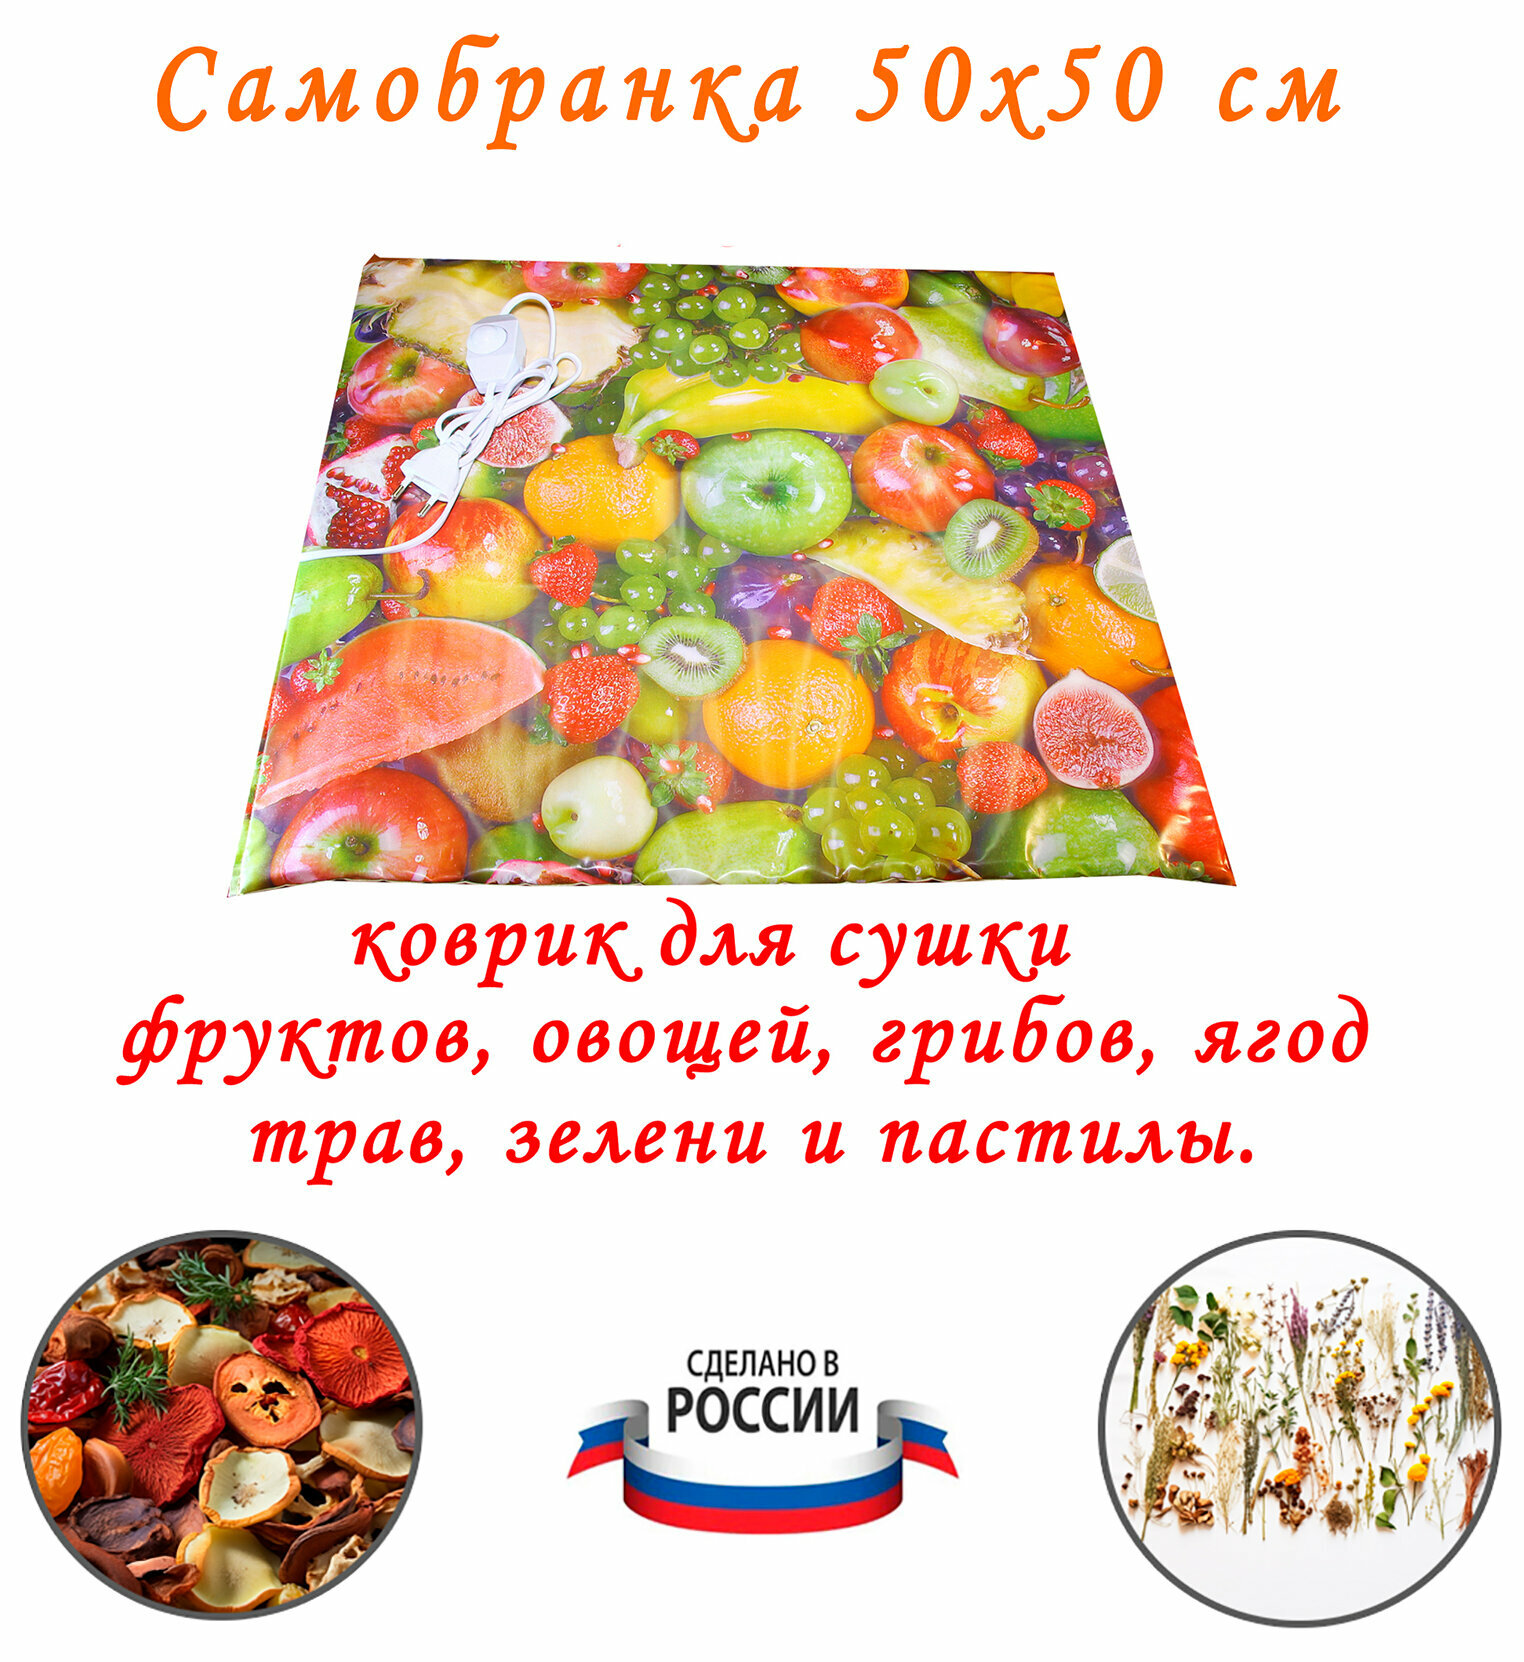 Коврик сушилка дегидратор для овощей, фруктов, грибов, ягод и трав Самобранка Тепломакс 50x50 см.